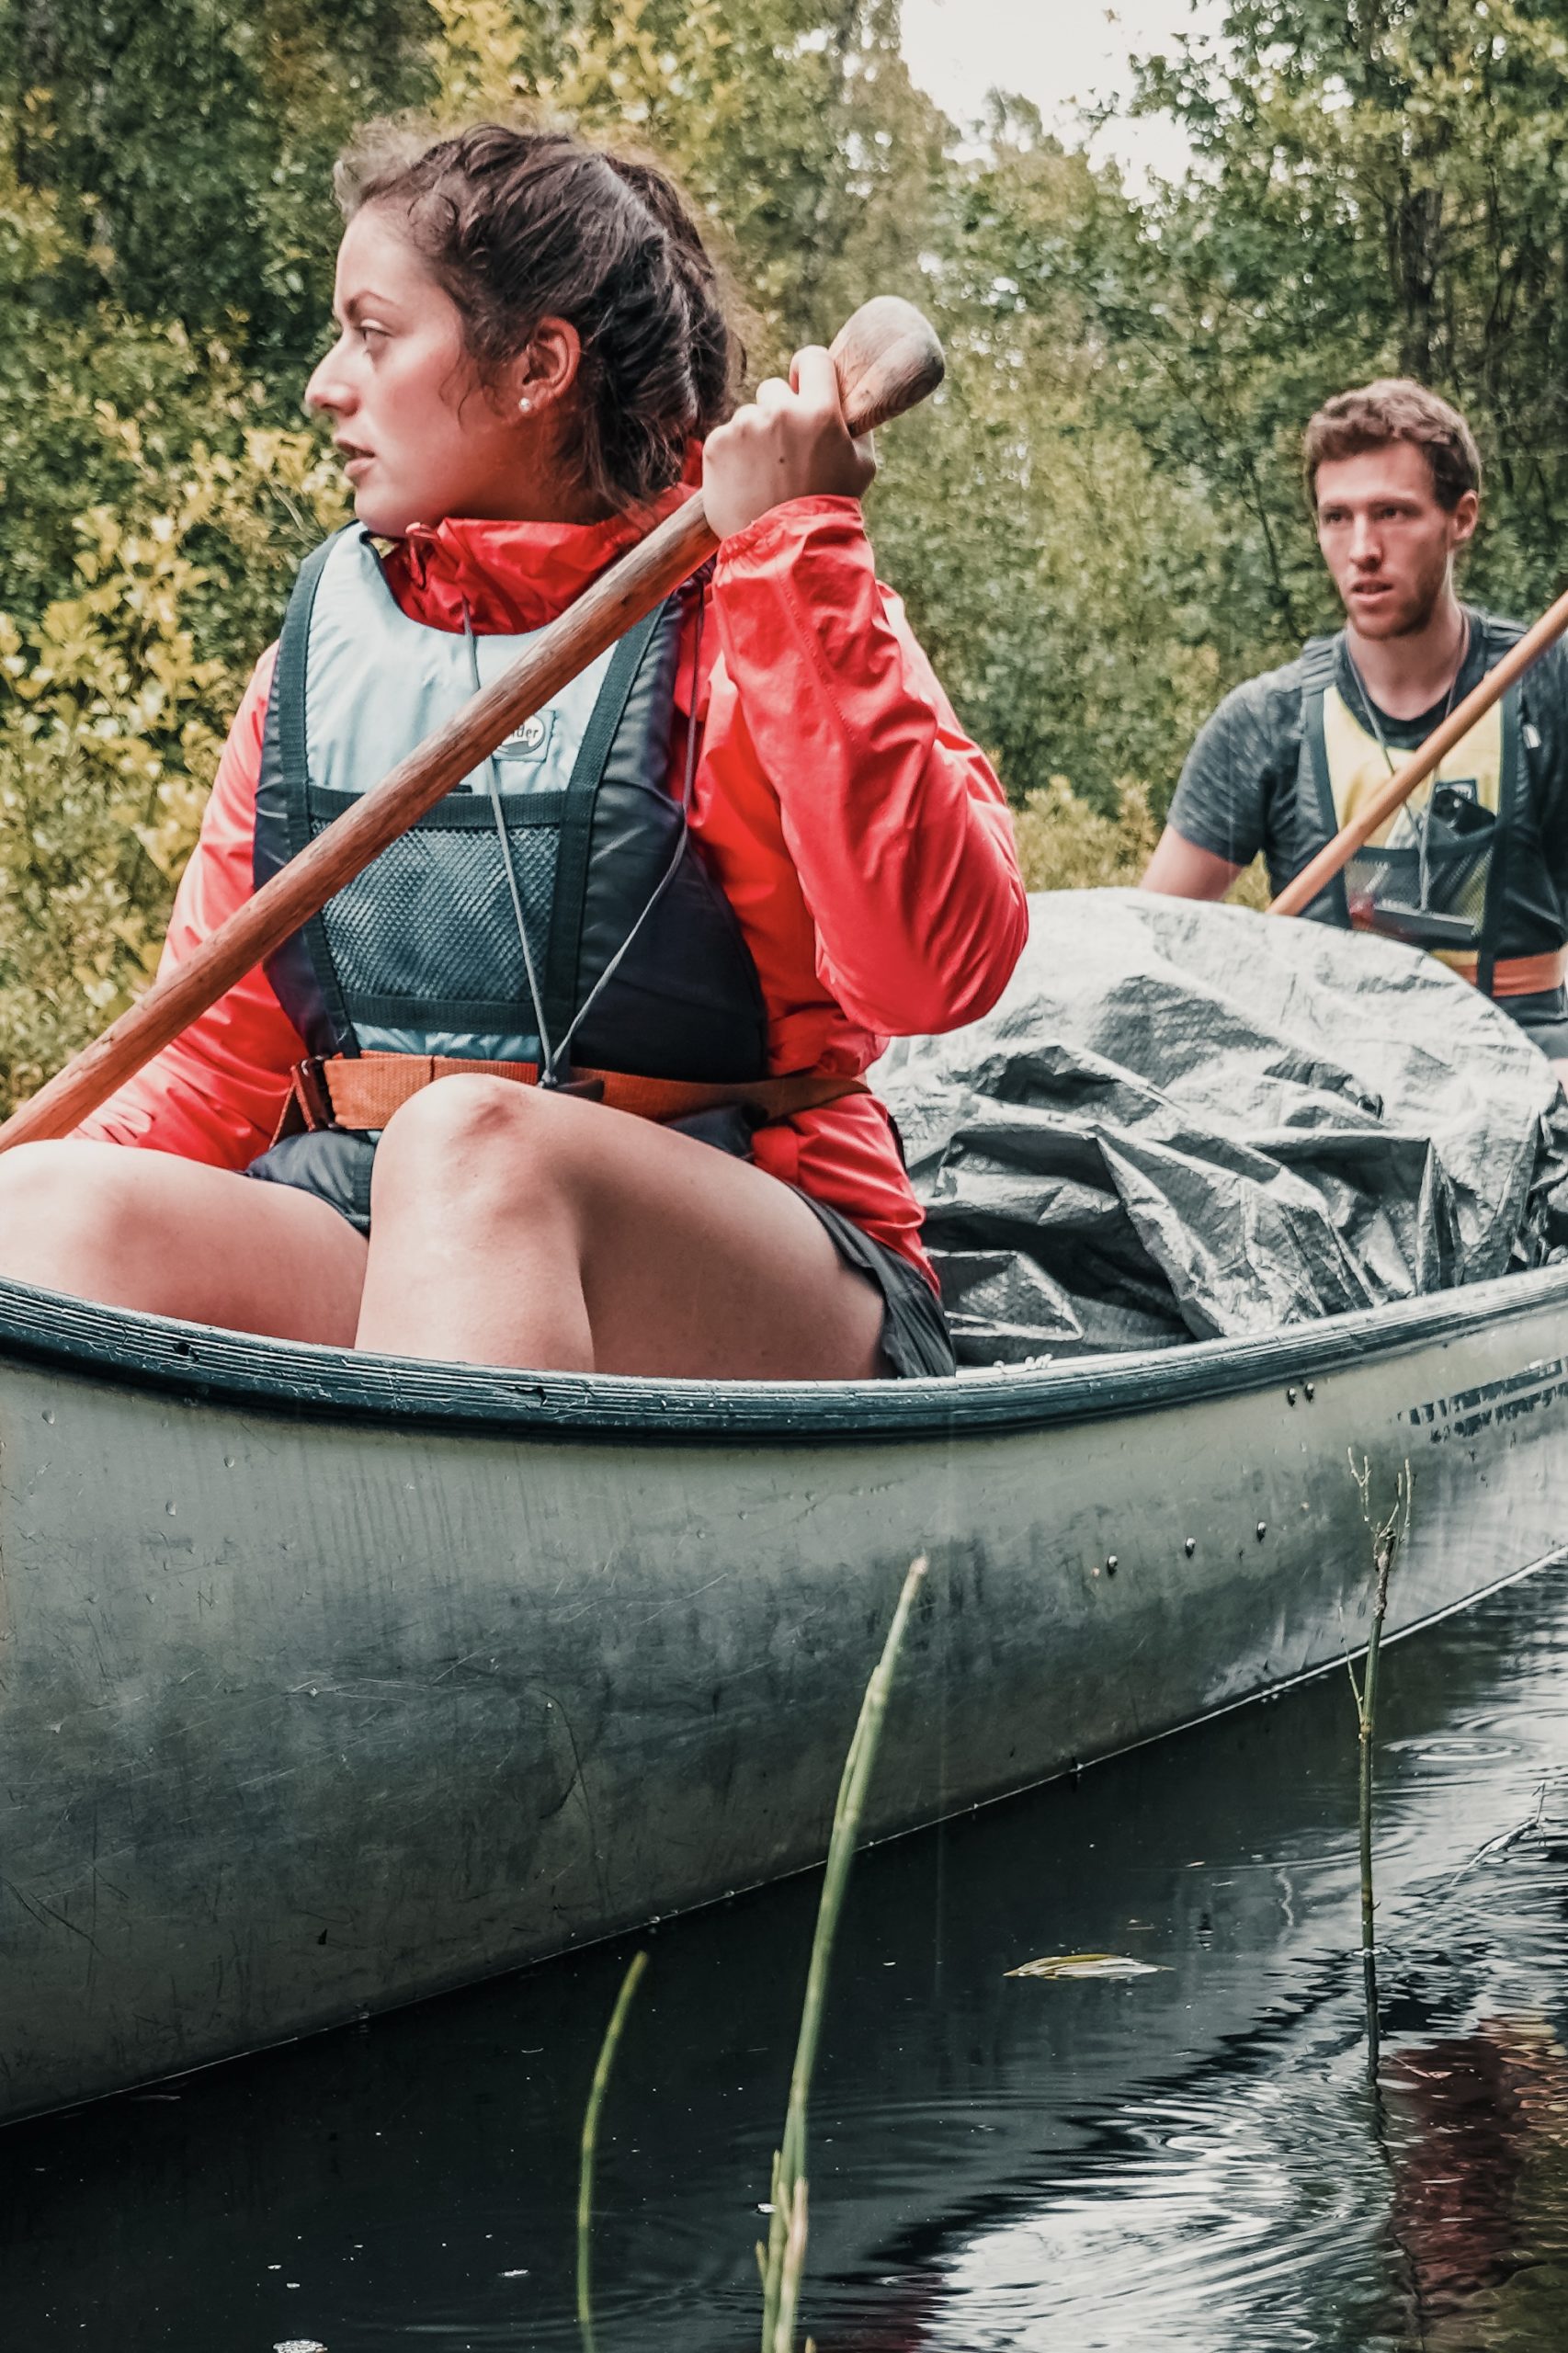 Reizen naar Zweden: 1 week kanoën in Varmland met vrienden met The Canoë Trip